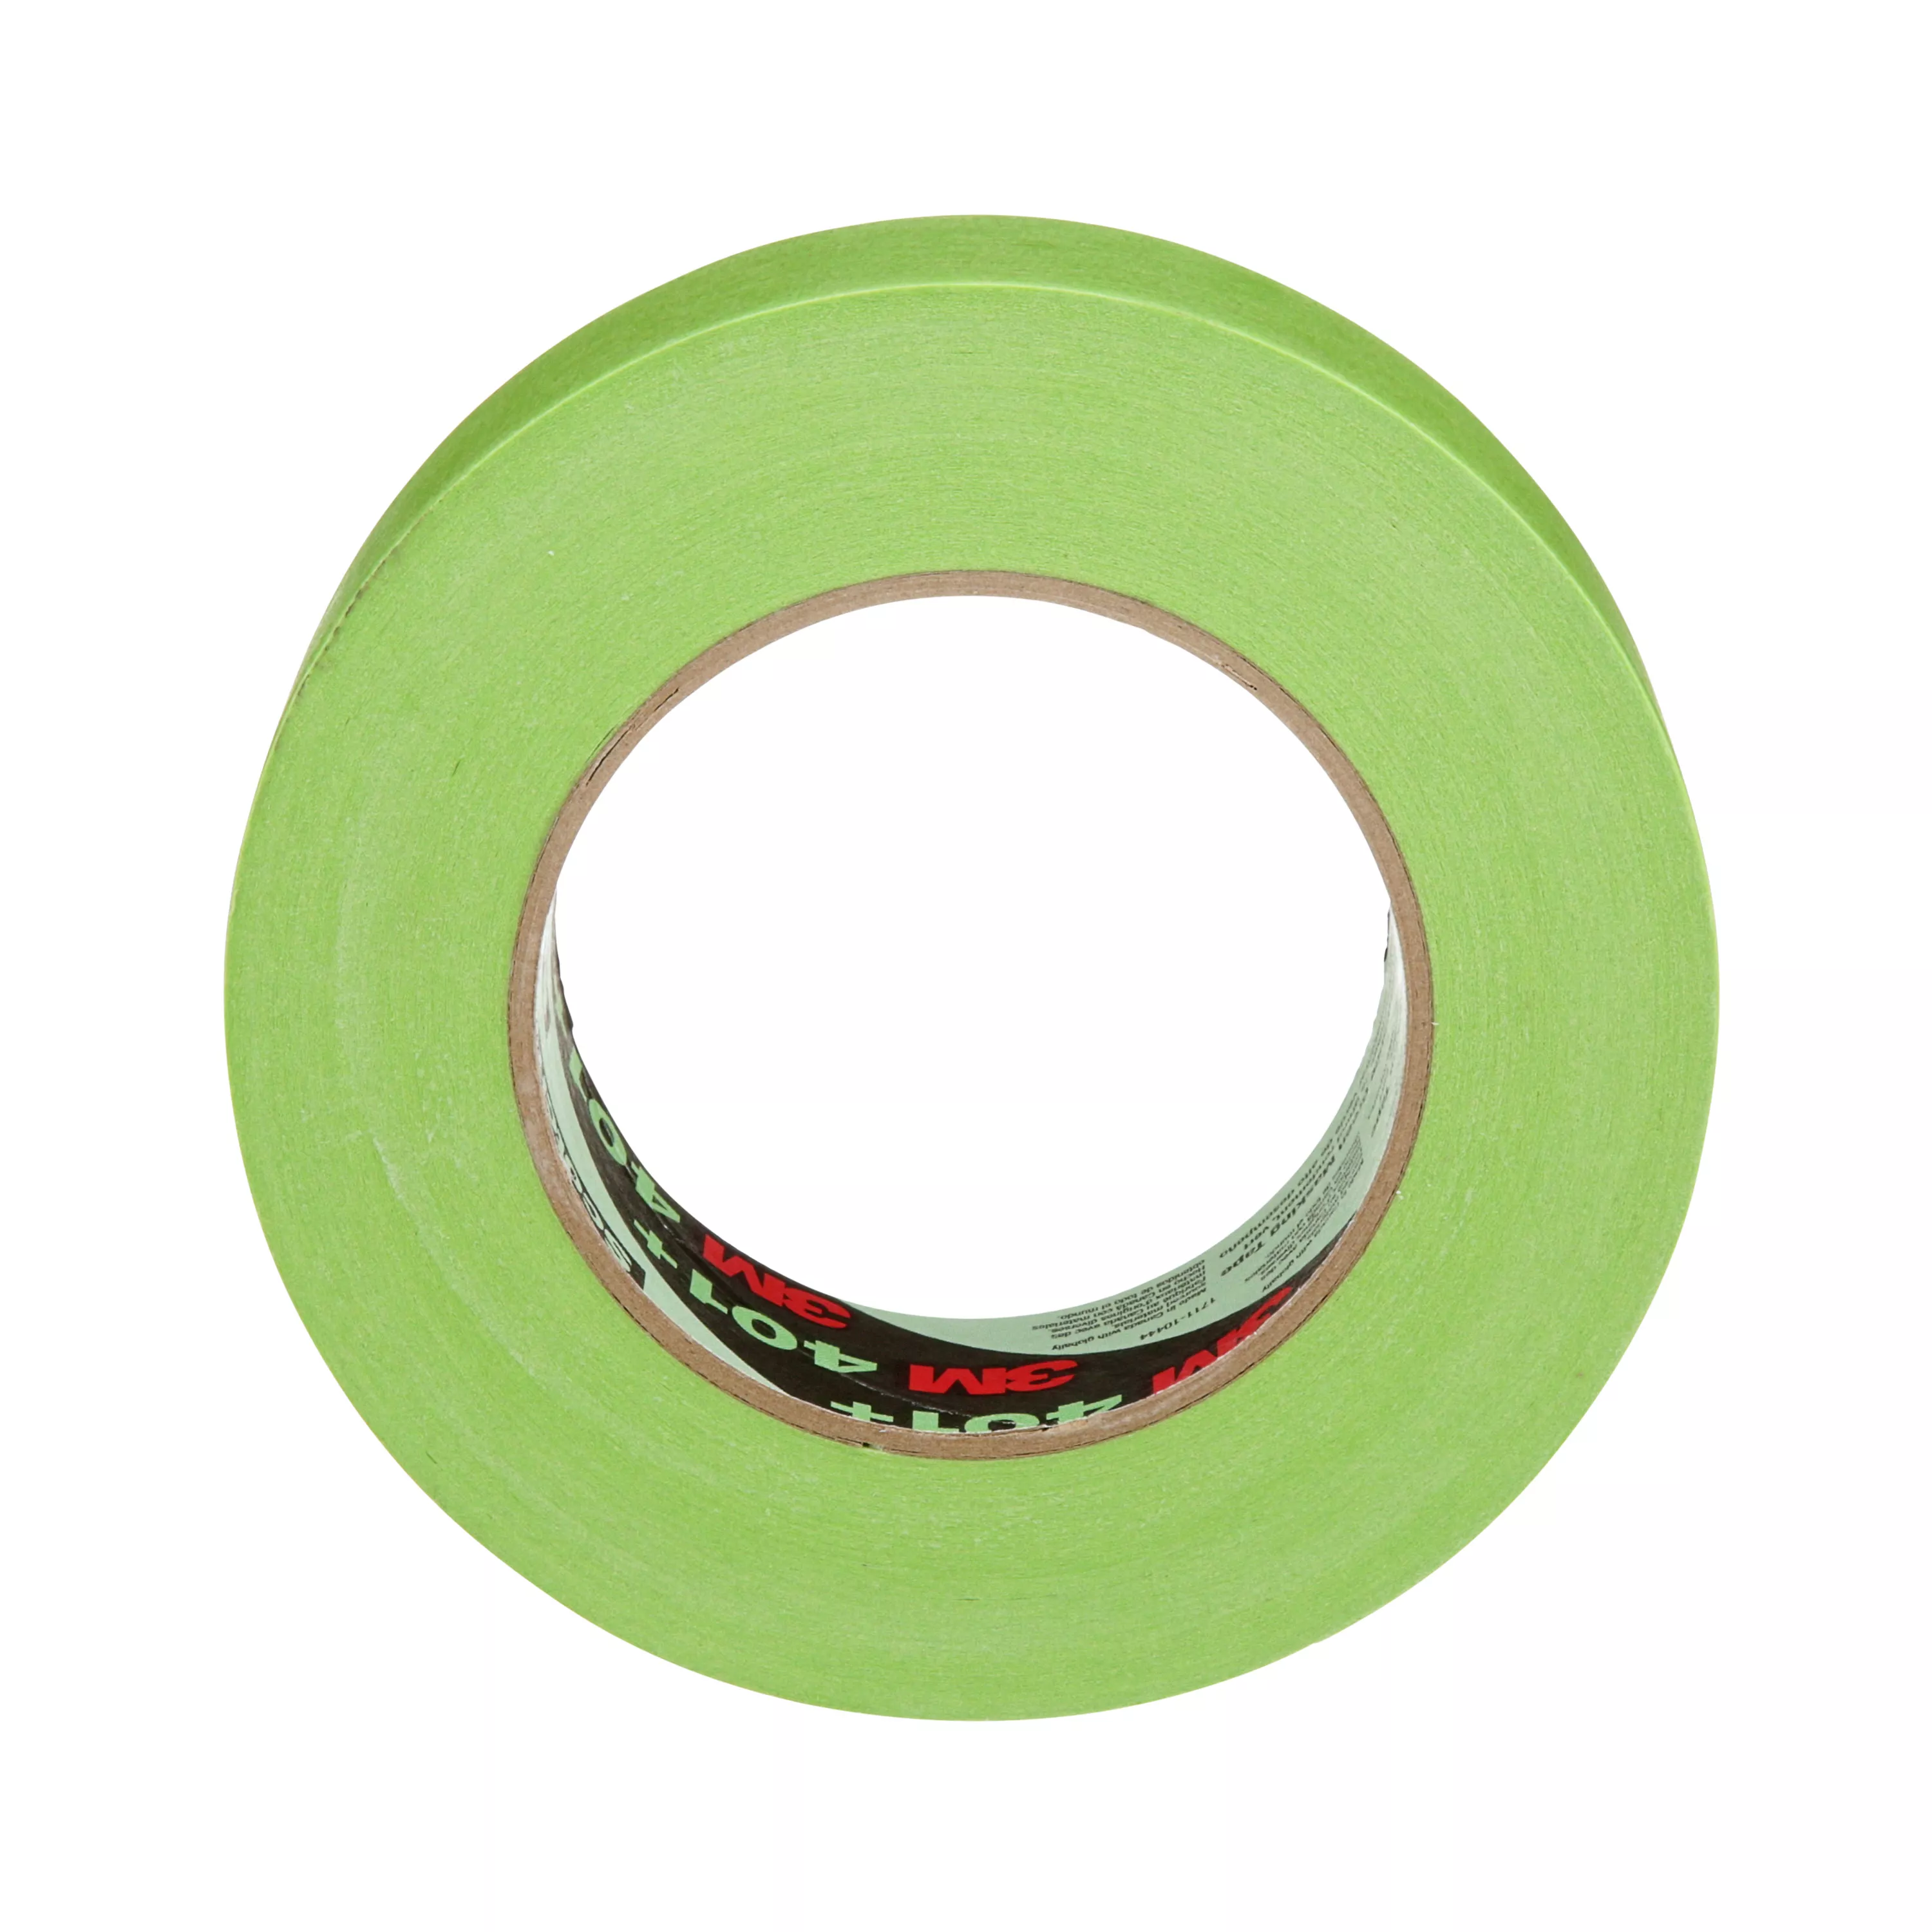 SKU 7100150661 | 3M™ High Performance Green Masking Tape 401+